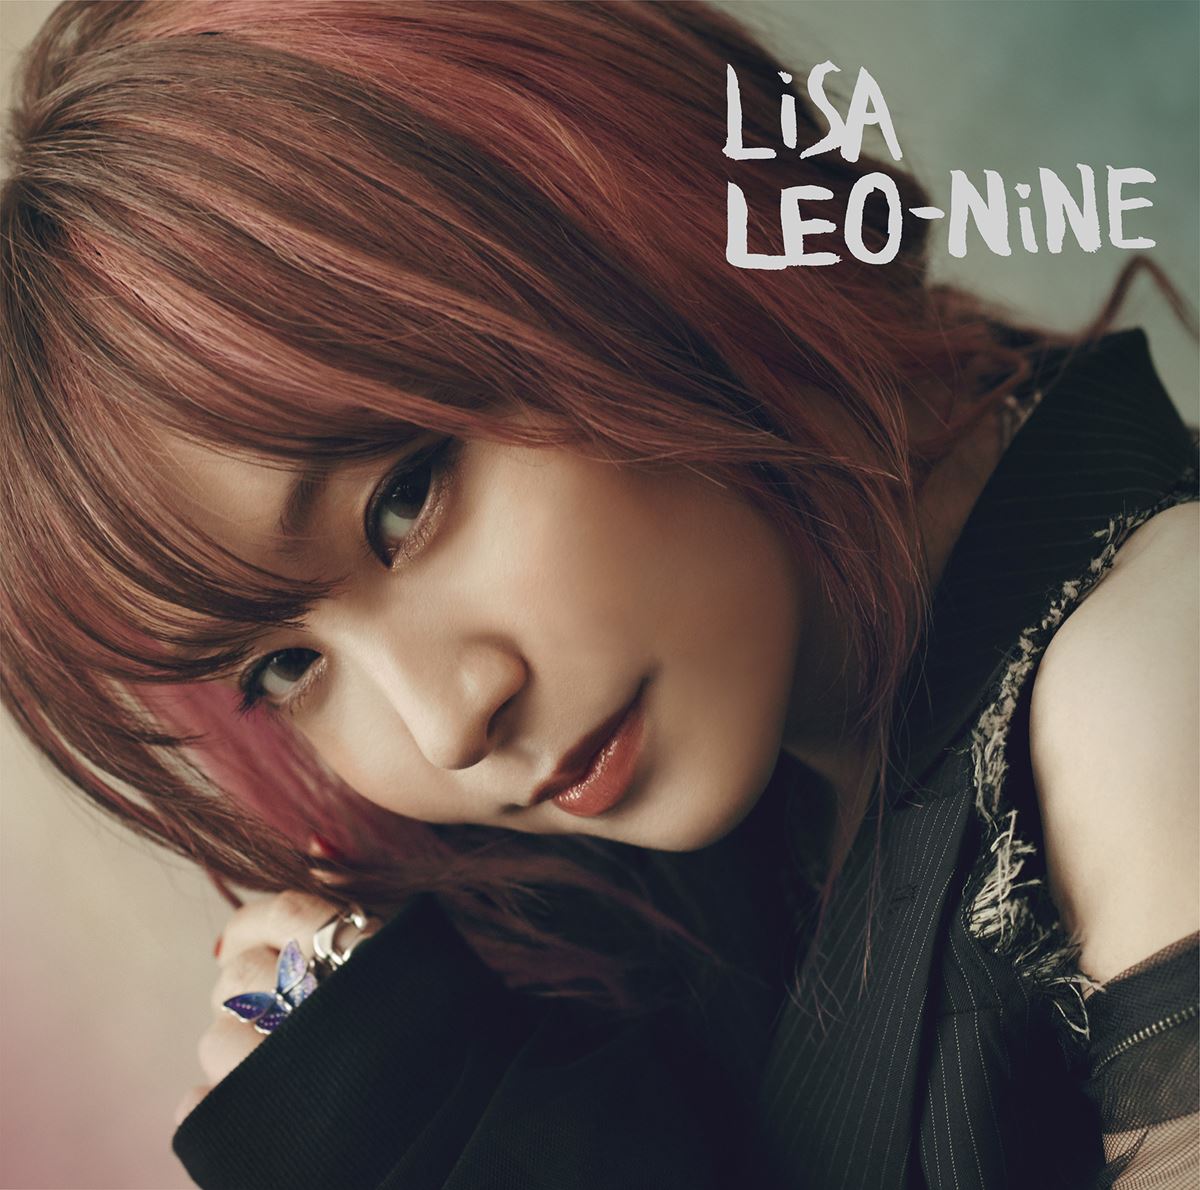 LiSA 5thアルバム『LEO-NiNE』通常盤